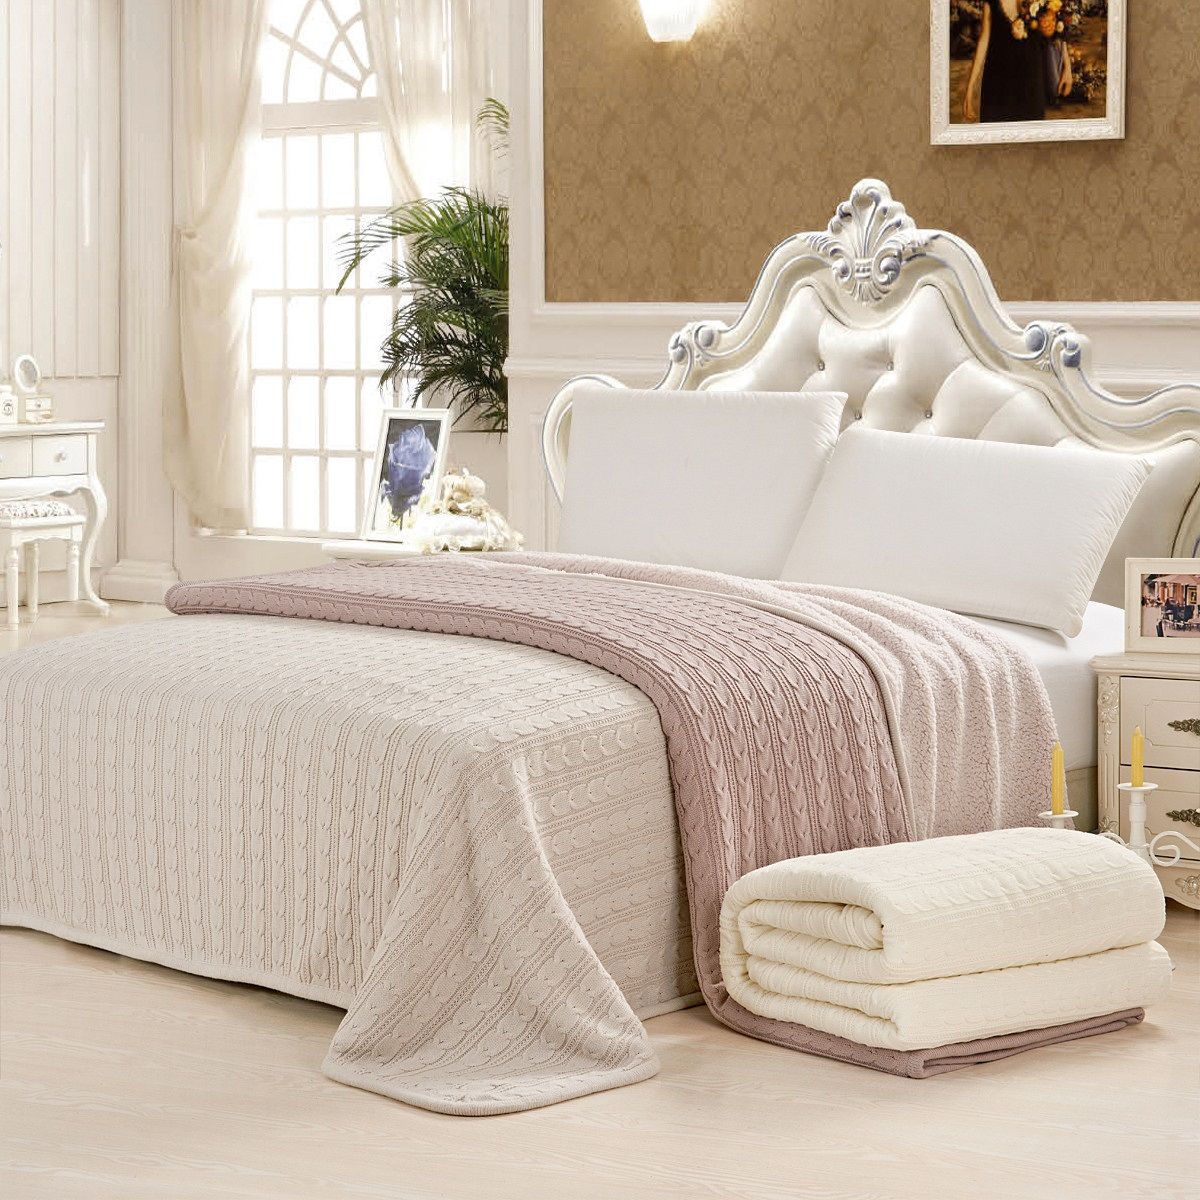 Белое и розовое вязаные покрывала в спальне